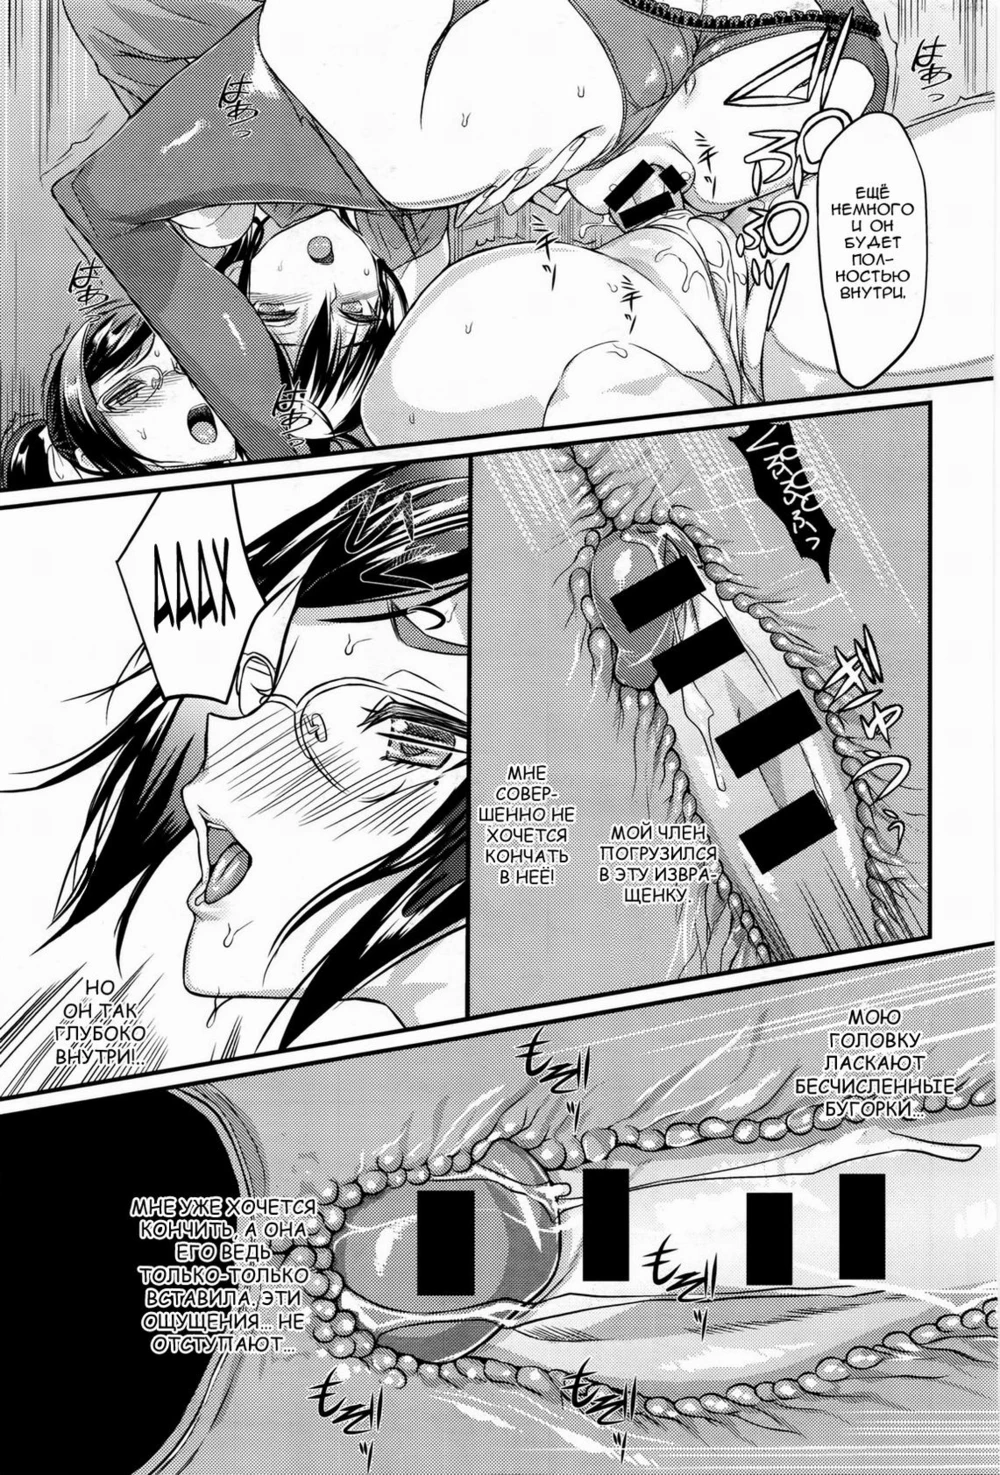 Seitokaichou No Himitsu - глава 5 » Хентай манга онлайн